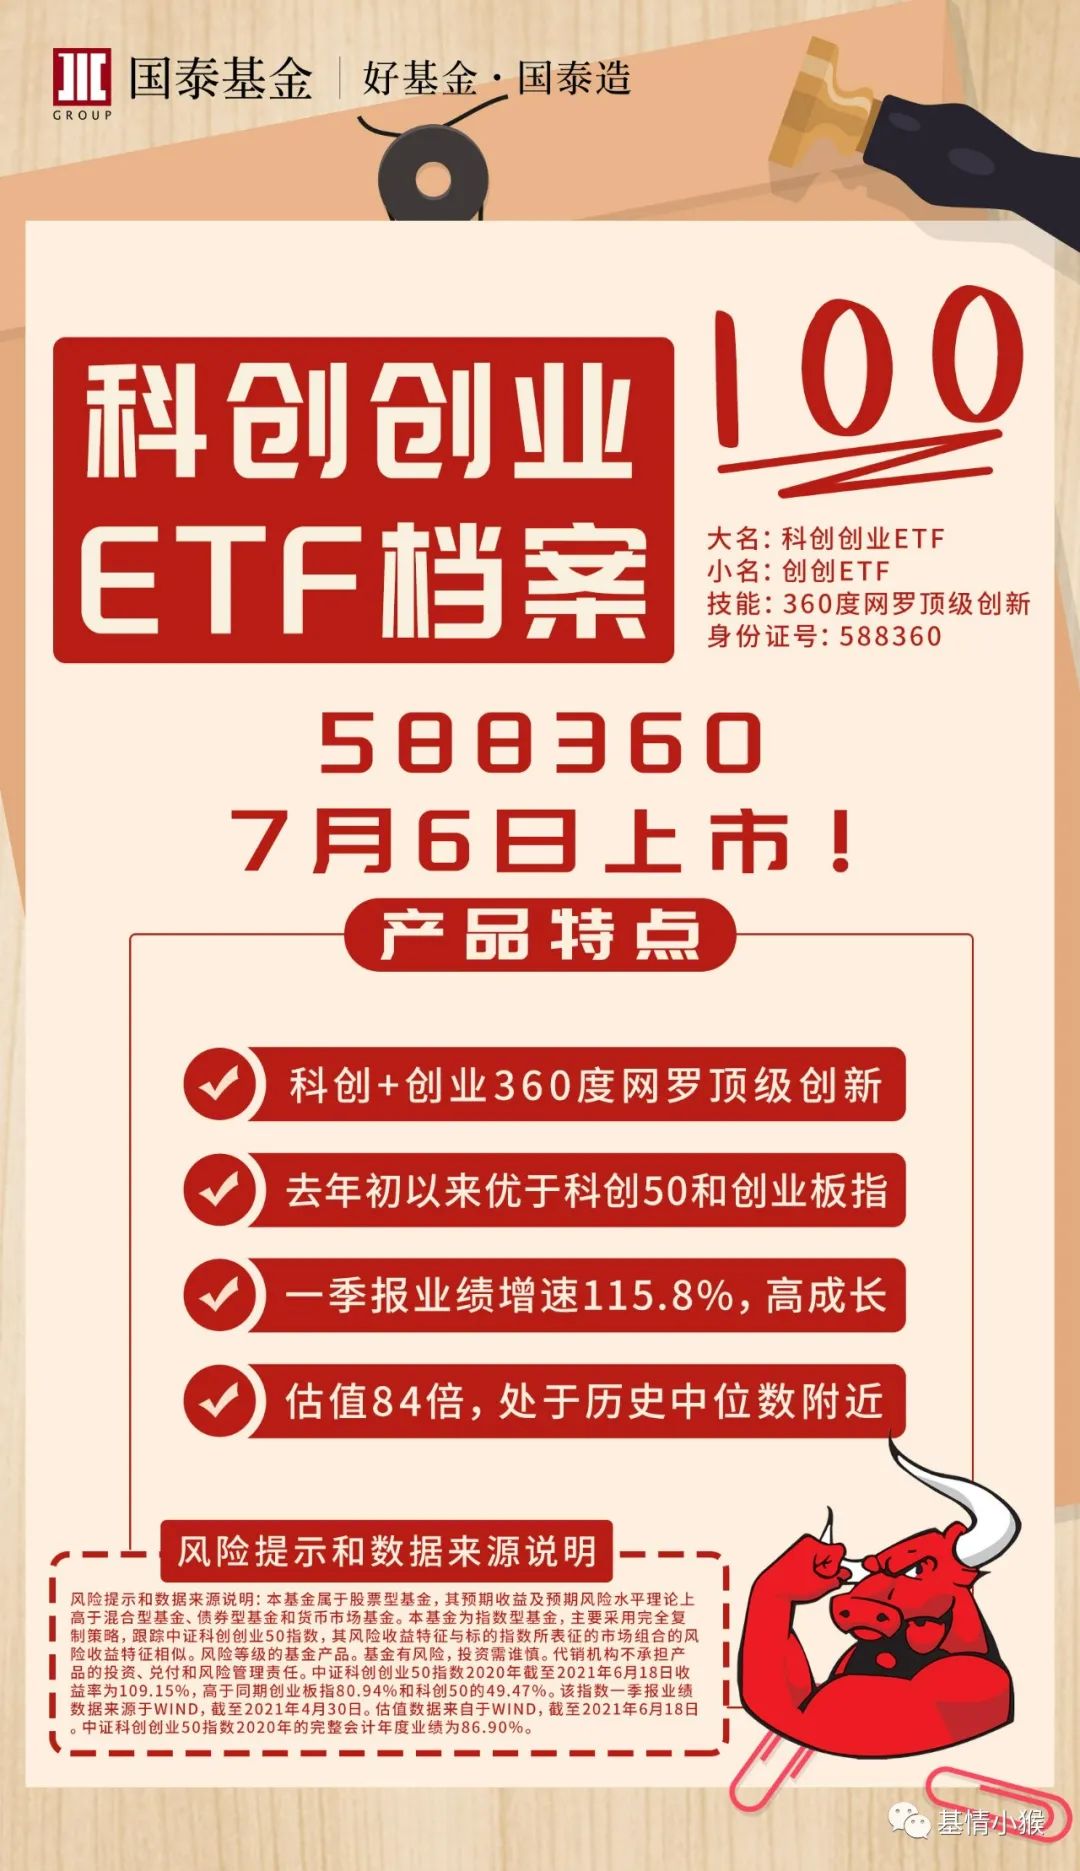 国泰科创创业ETF于7月6日上市交易